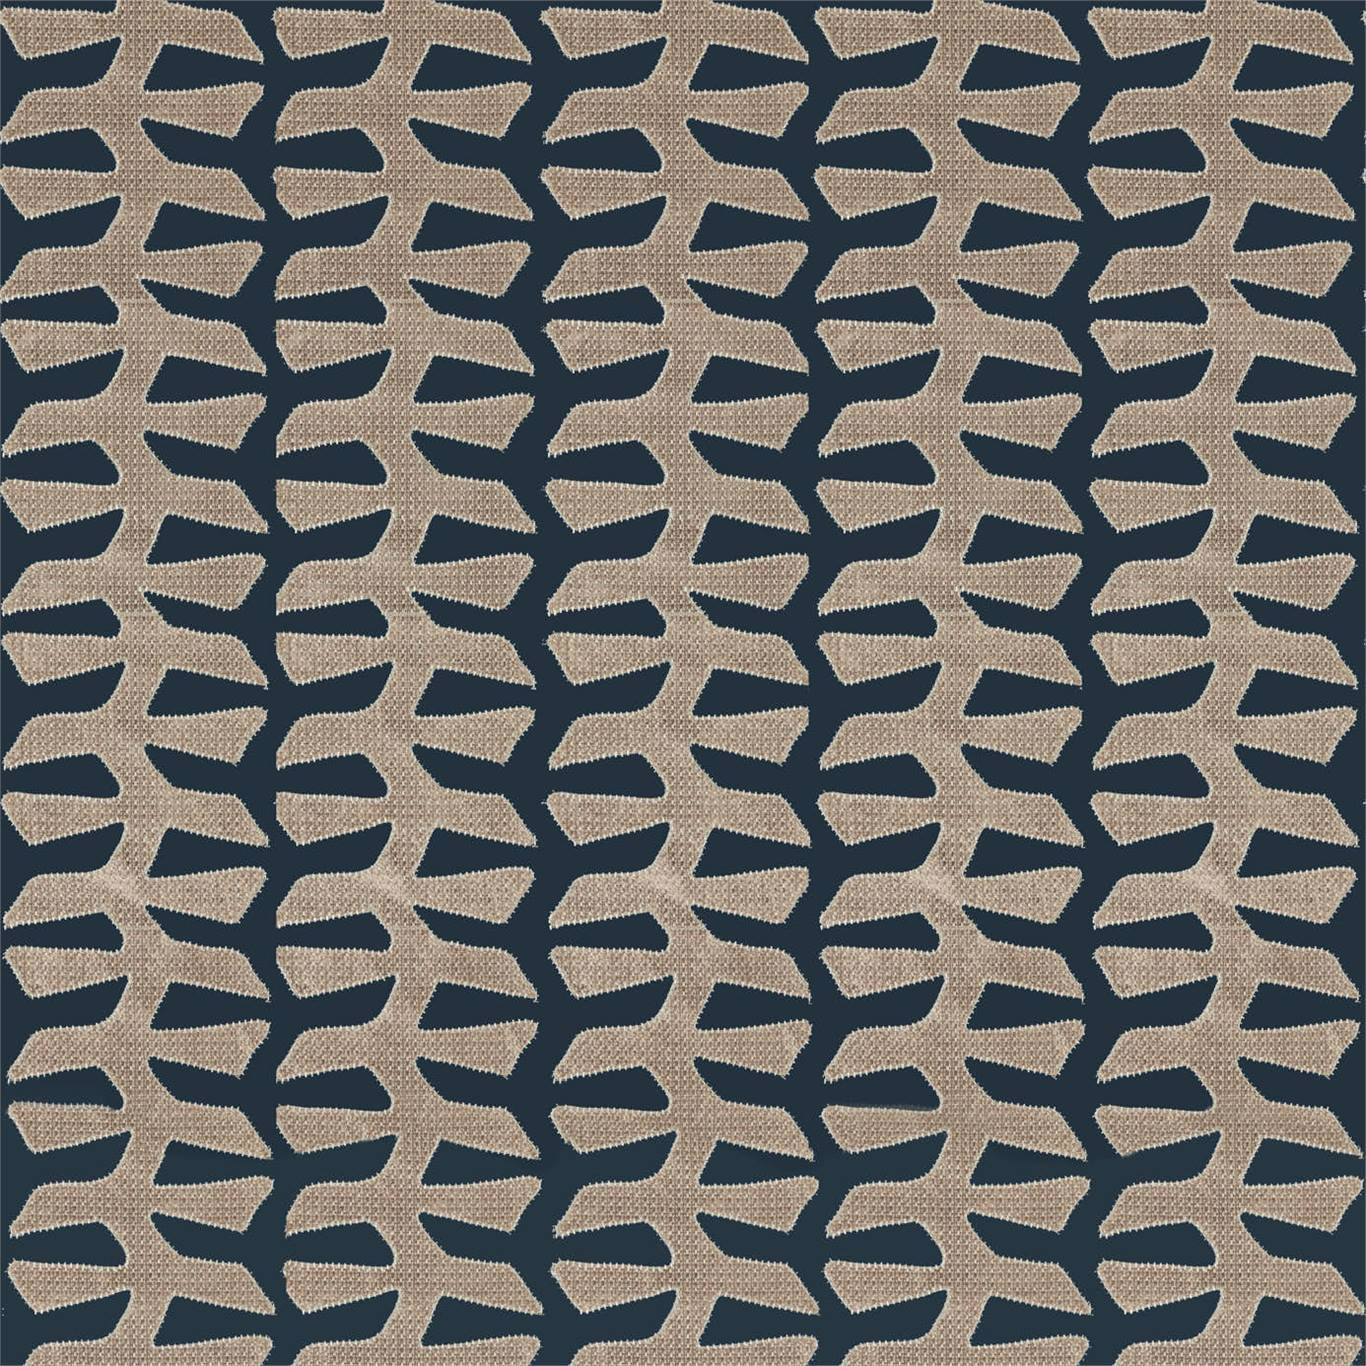 Verdi Applique Applique Gargoyle Fabric by ZOF